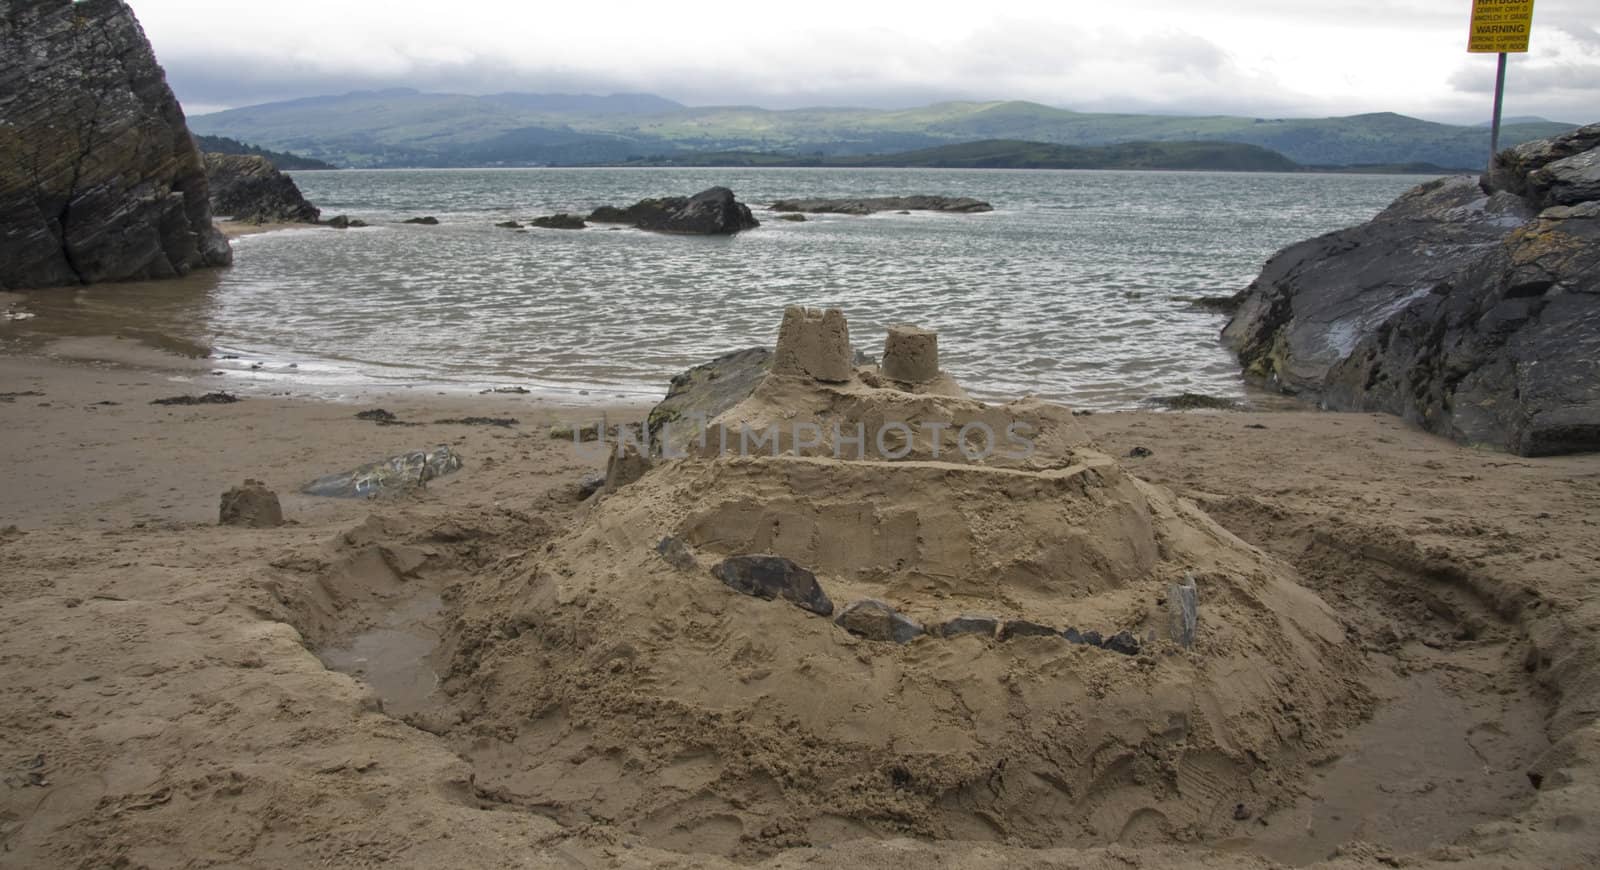 Sandcastle build at edge of dangerous estuary.